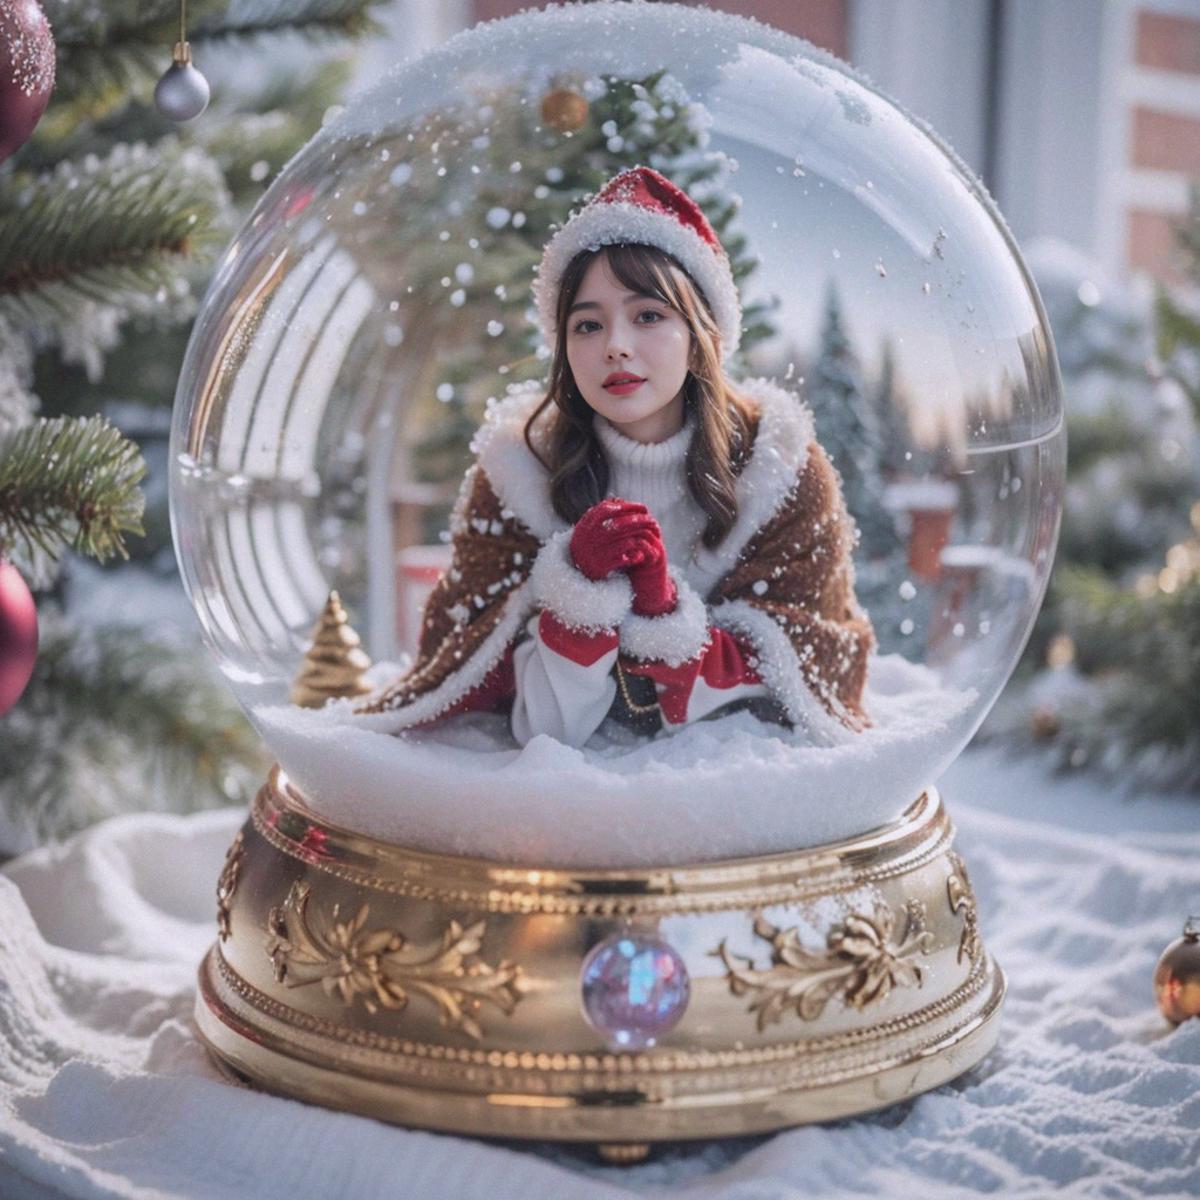 Christmas crystal ball image by Merjic